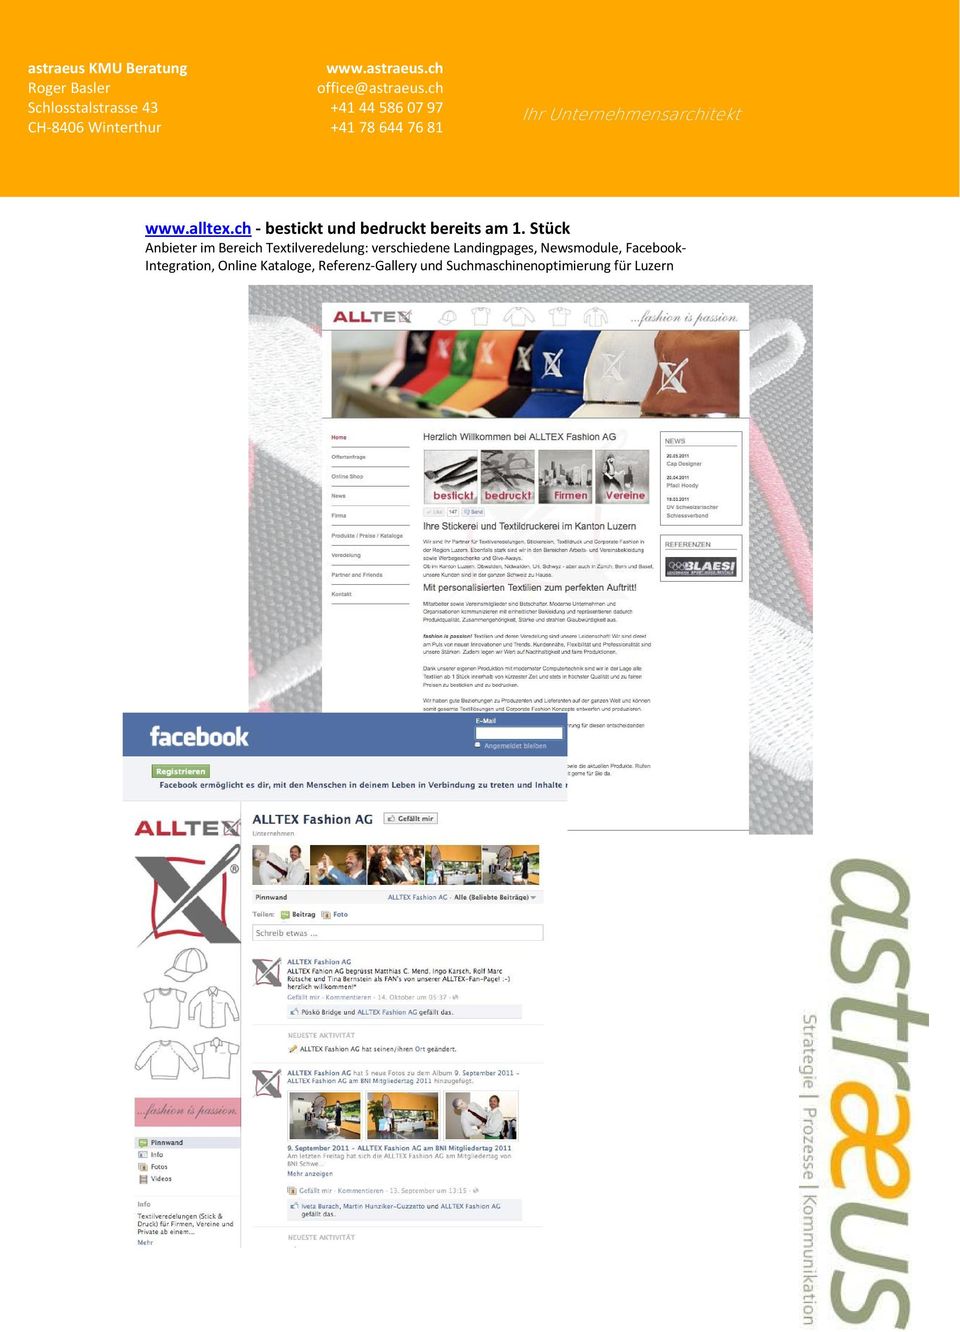 Landingpages, Newsmodule, Facebook- Integration, Online